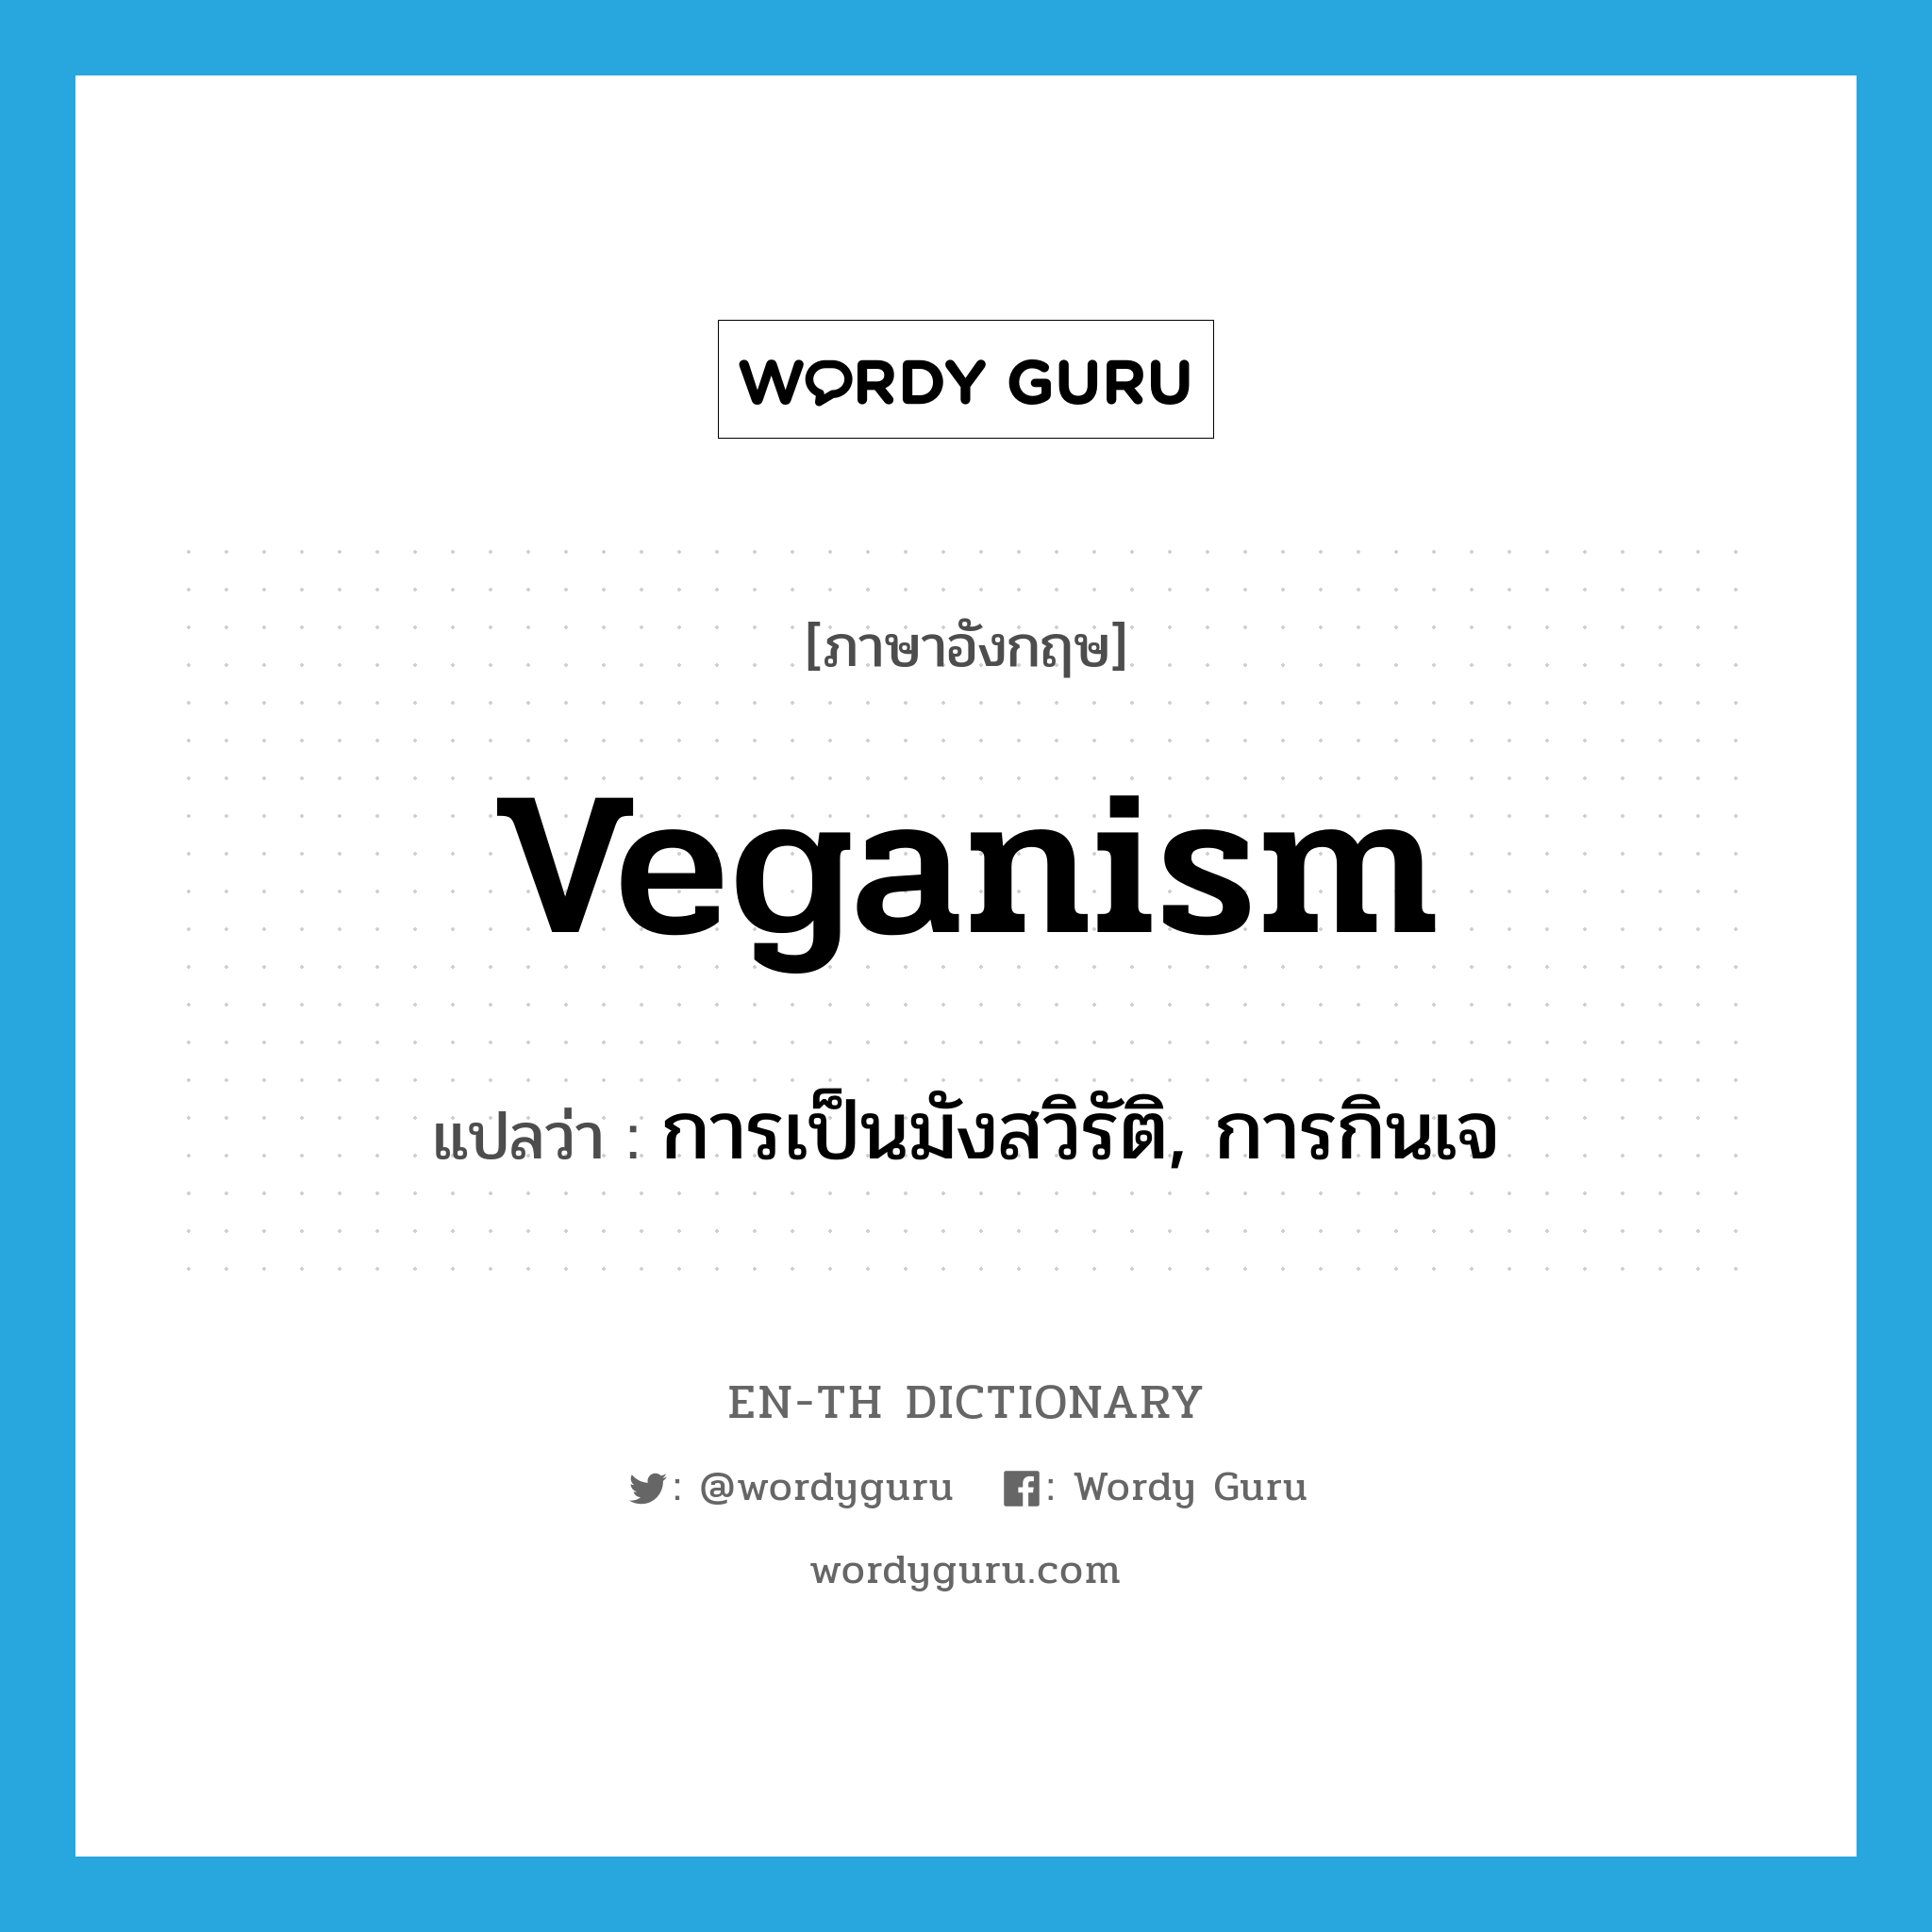 การเป็นมังสวิรัติ, การกินเจ ภาษาอังกฤษ?, คำศัพท์ภาษาอังกฤษ การเป็นมังสวิรัติ, การกินเจ แปลว่า veganism ประเภท N หมวด N